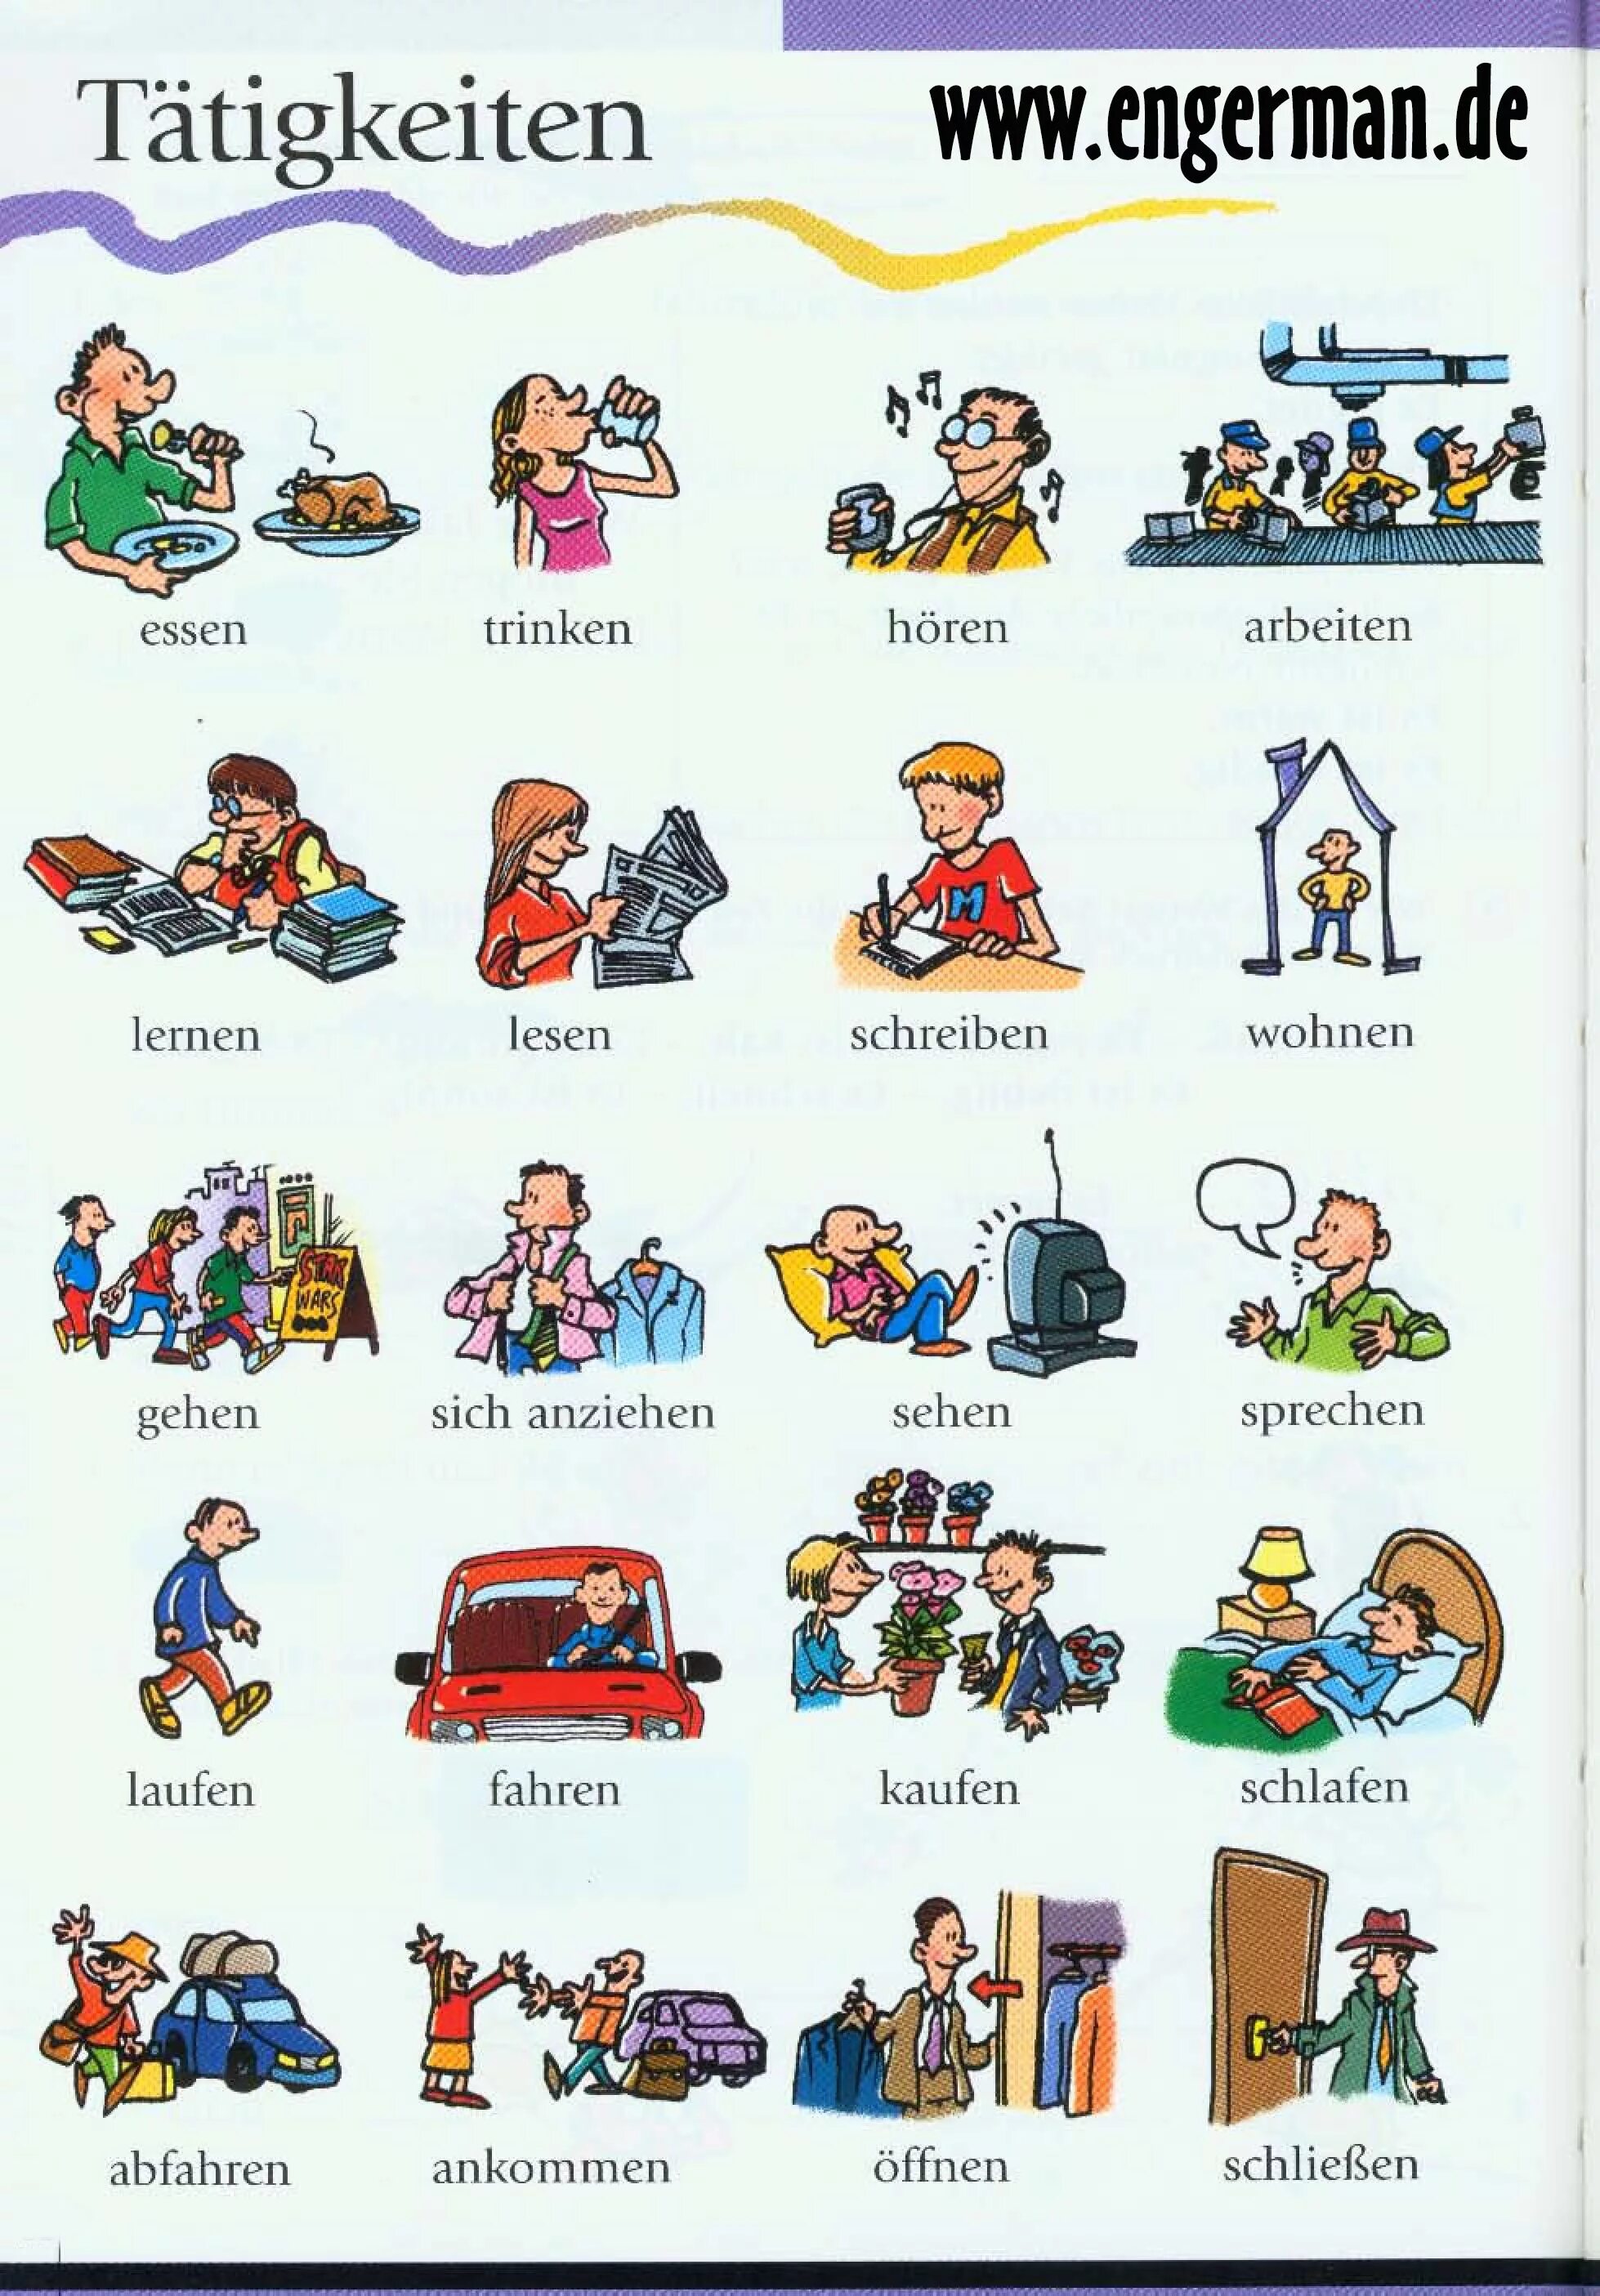 Немецкие слова глаголы. Немецкие глаголы для детей. Немецкие глаголы в картинках. Глаголы действия на немецком. Глаголы в картинках на немецком языке.